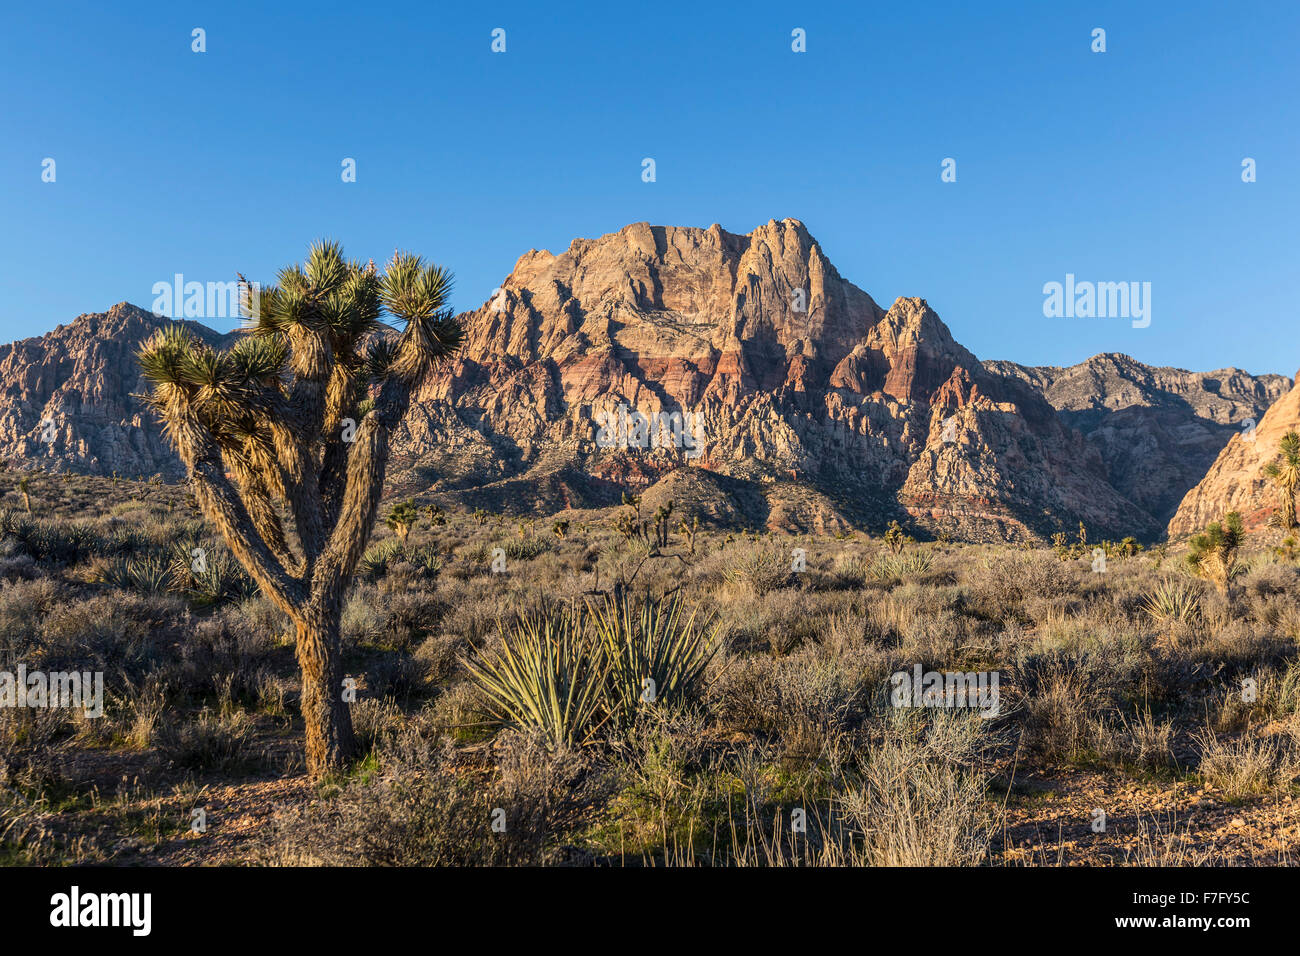 Joshua tree et des pics de montagne au Red Rock Canyon National Conservation Area près de Las Vegas, Nevada. Banque D'Images